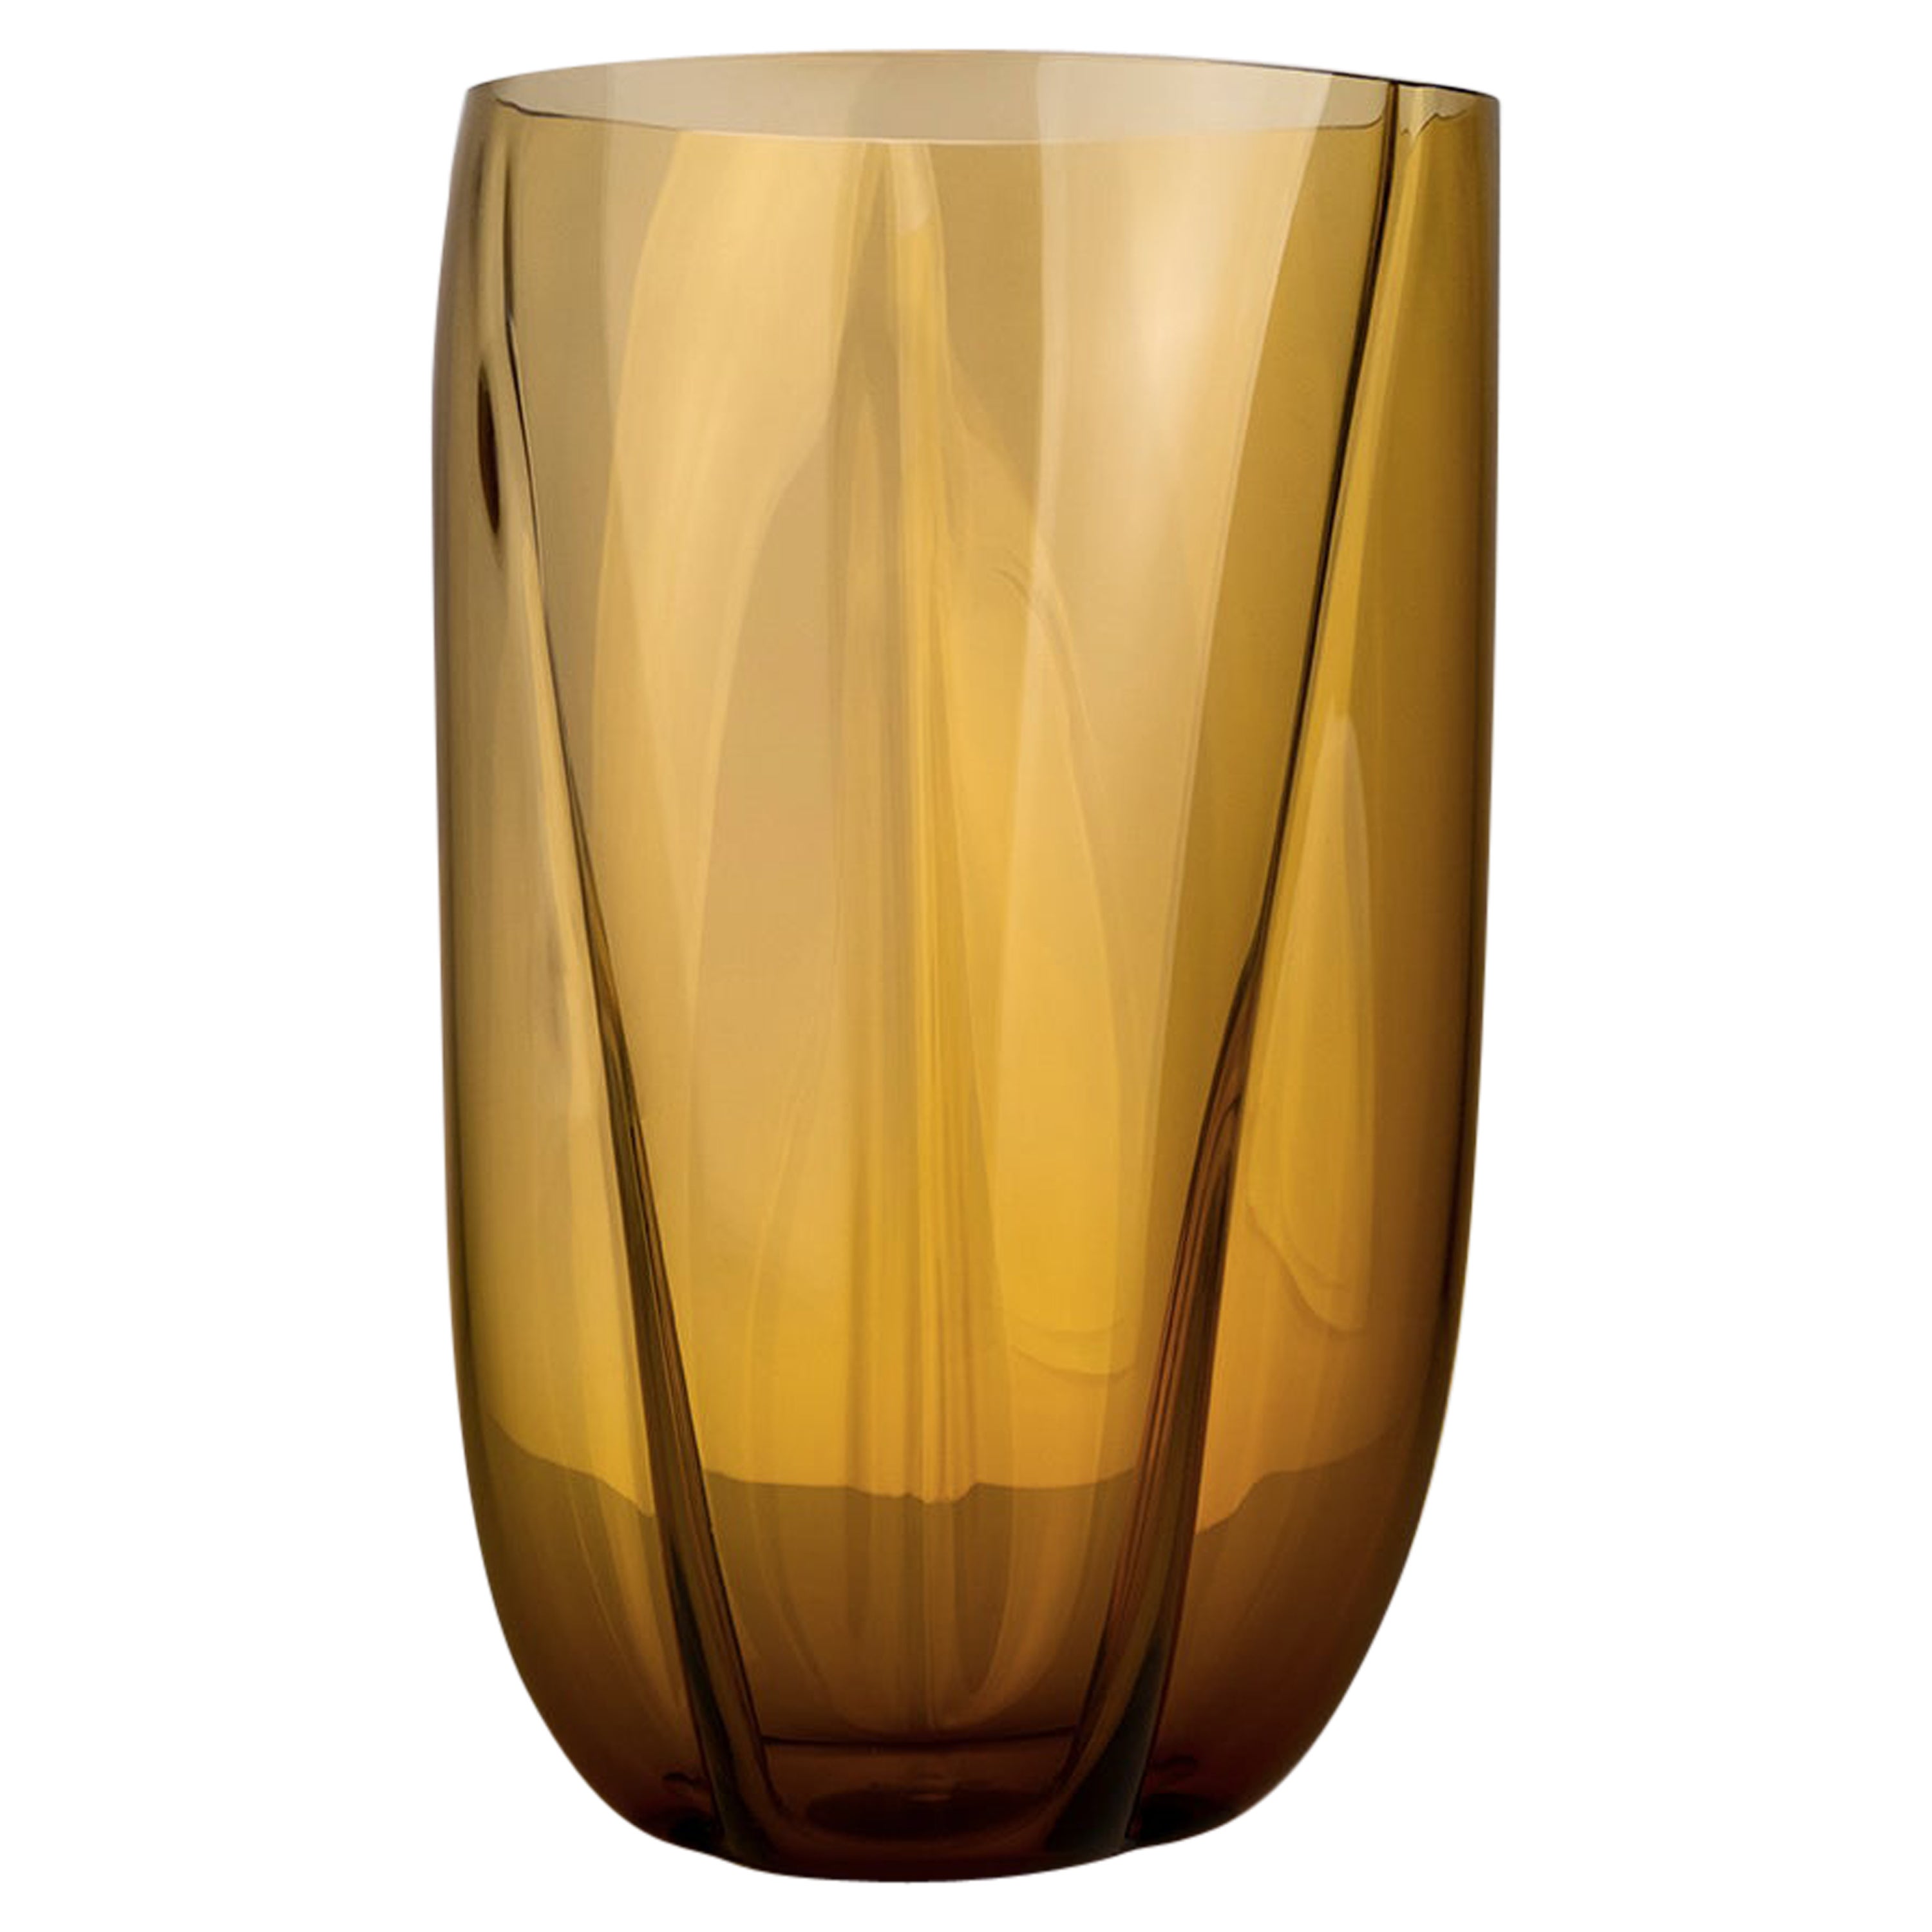 Grand vase en verre de Murano ambré Alessandro Mendini, XXIe siècle